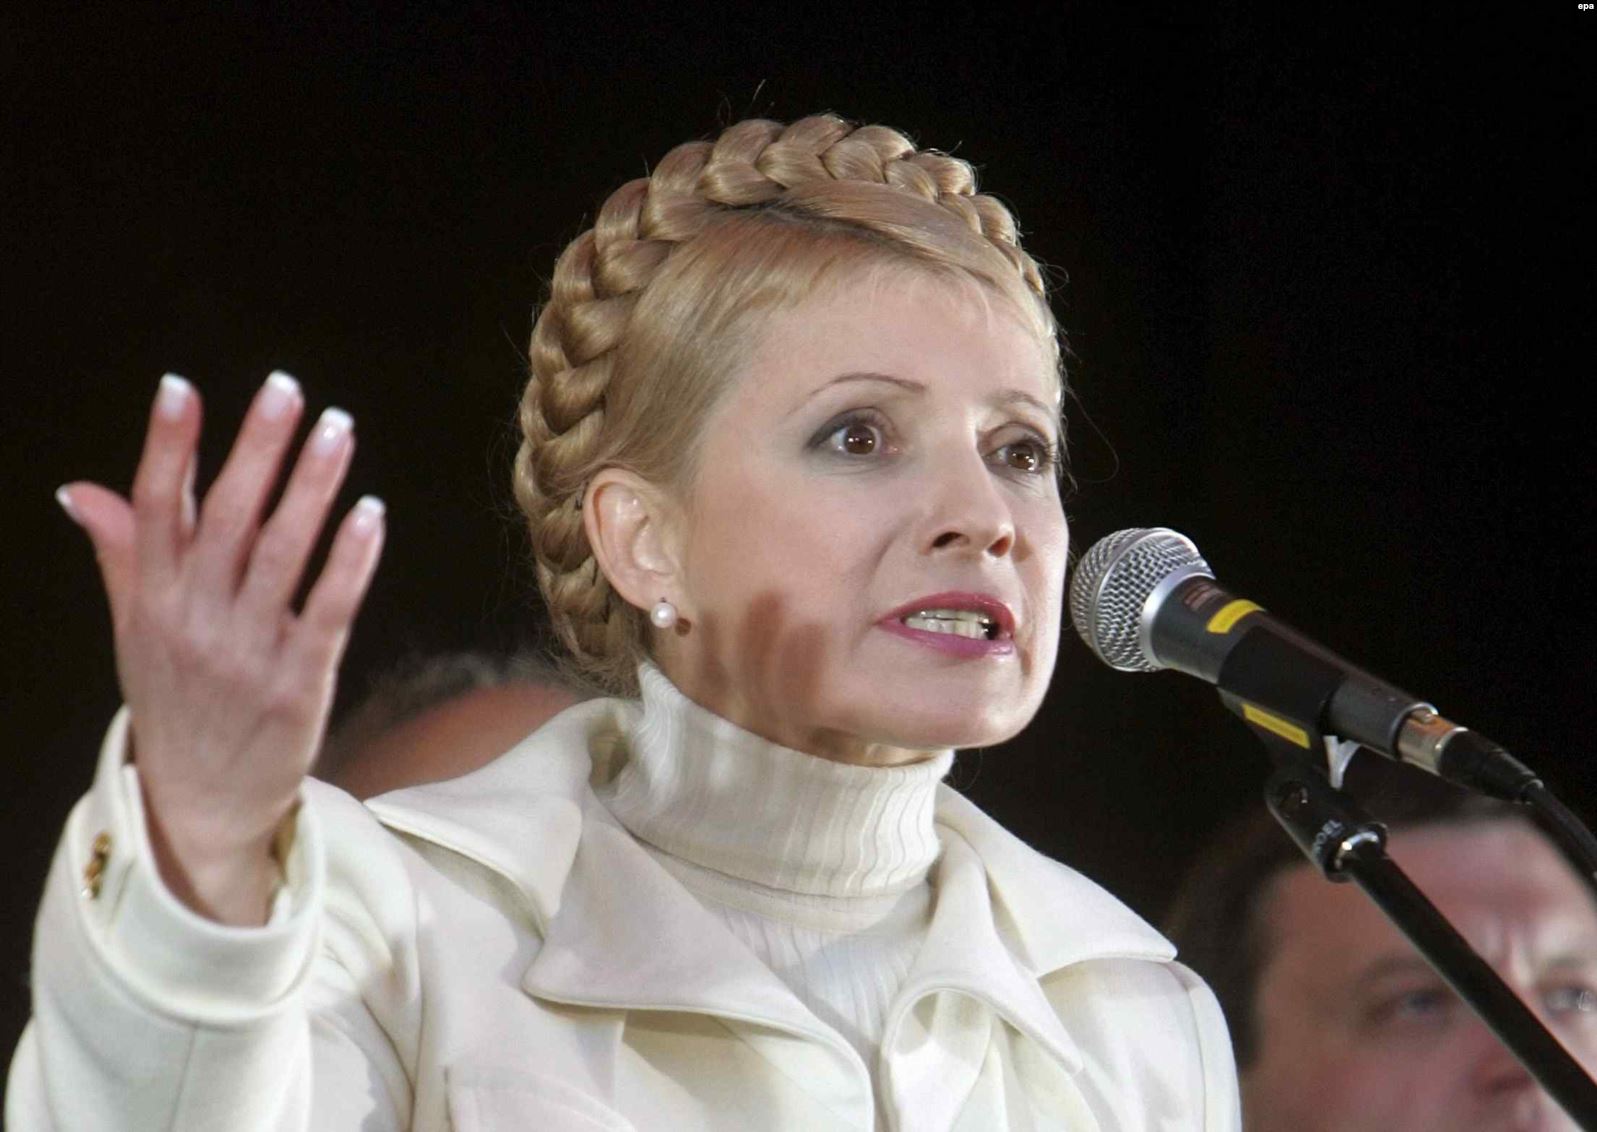 Юлія Тимошенко: 25 років політичної кар'єри - як змінювався її образ  протягом цього часу - фото 14